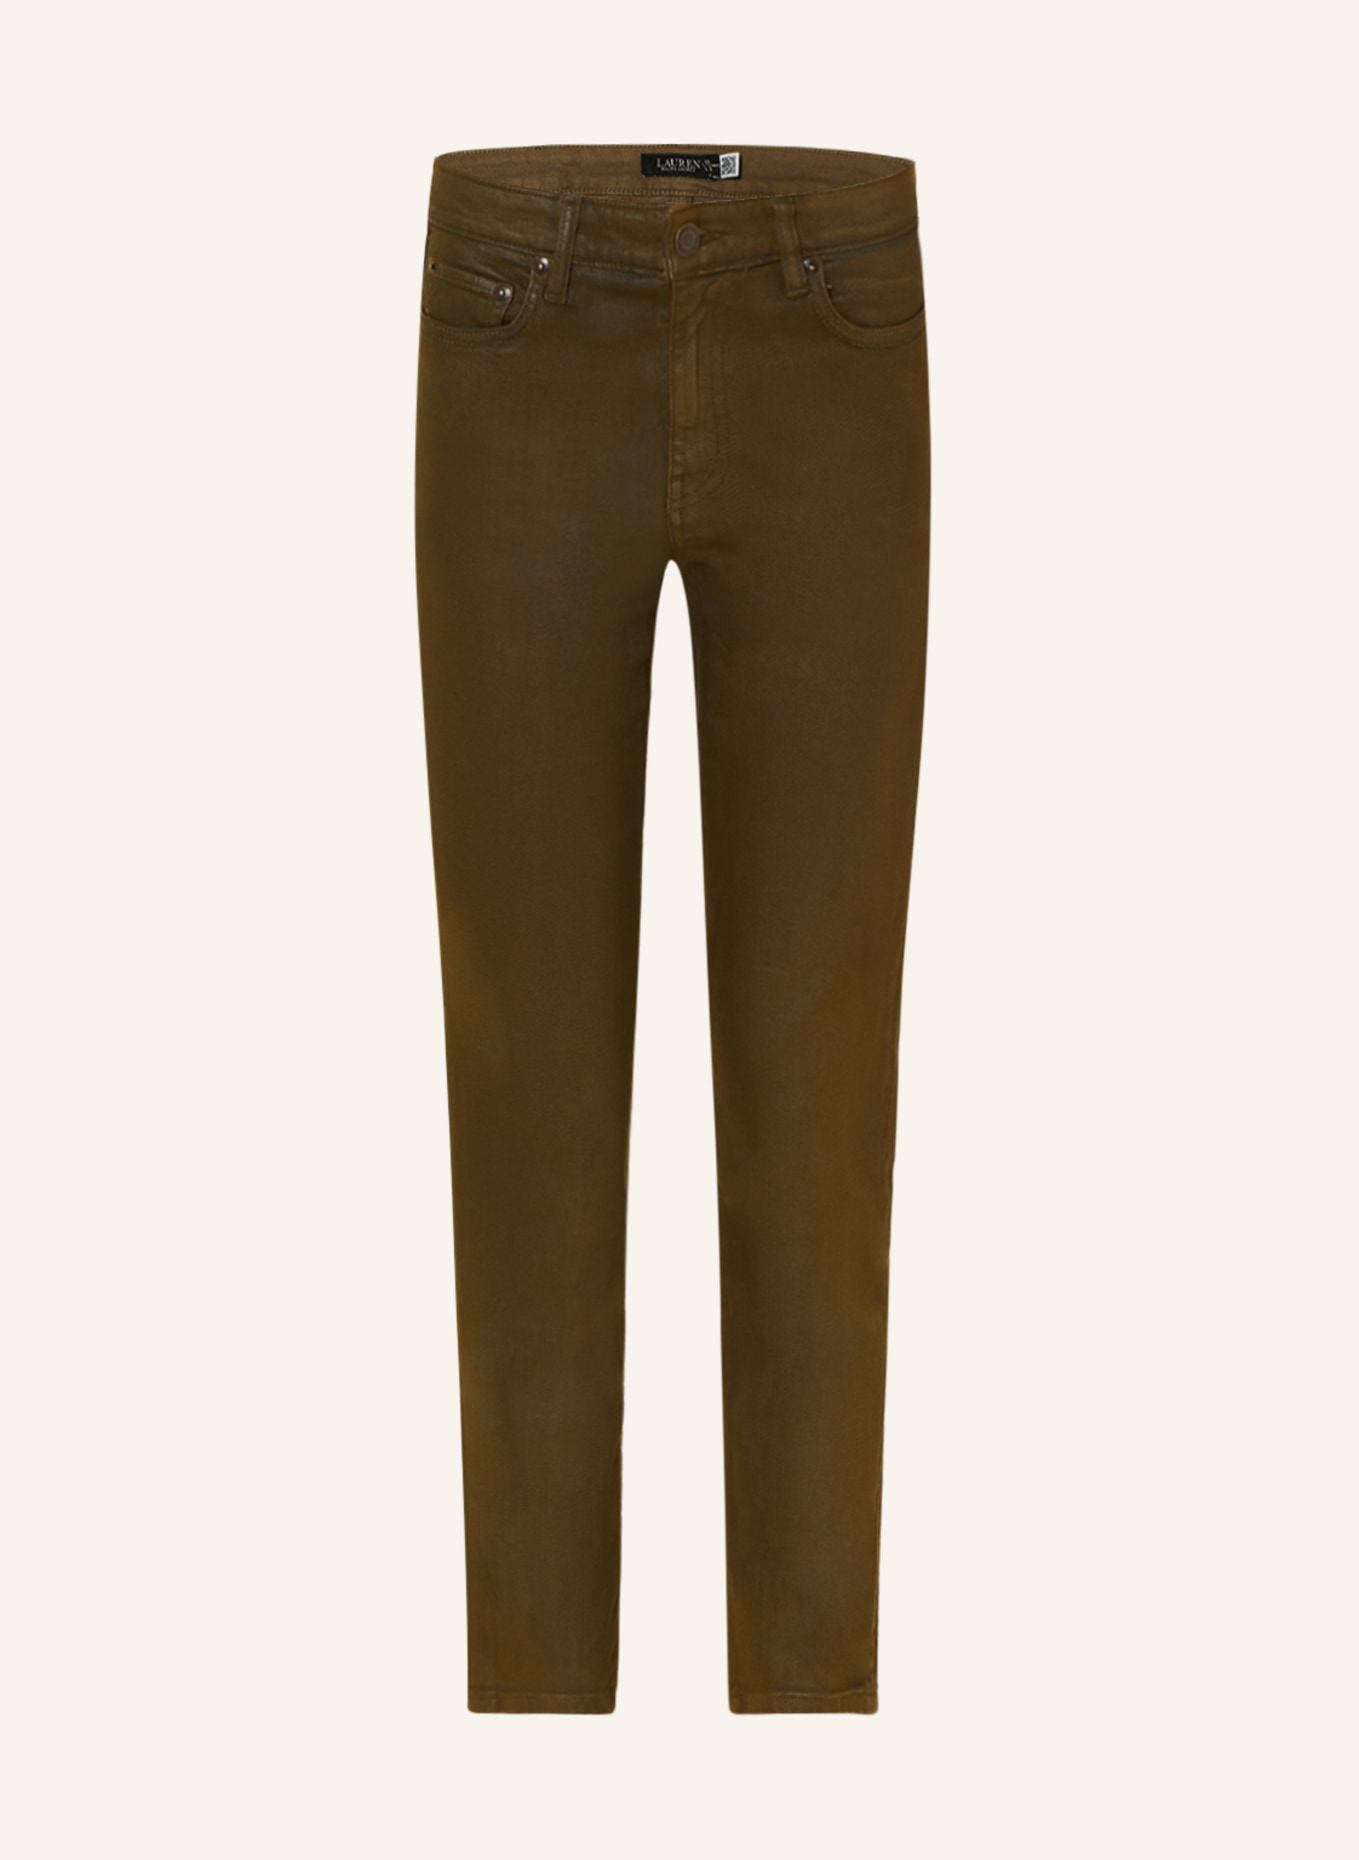 LAUREN RALPH LAUREN Coated jeans, Color: OLIVE (Image 1)